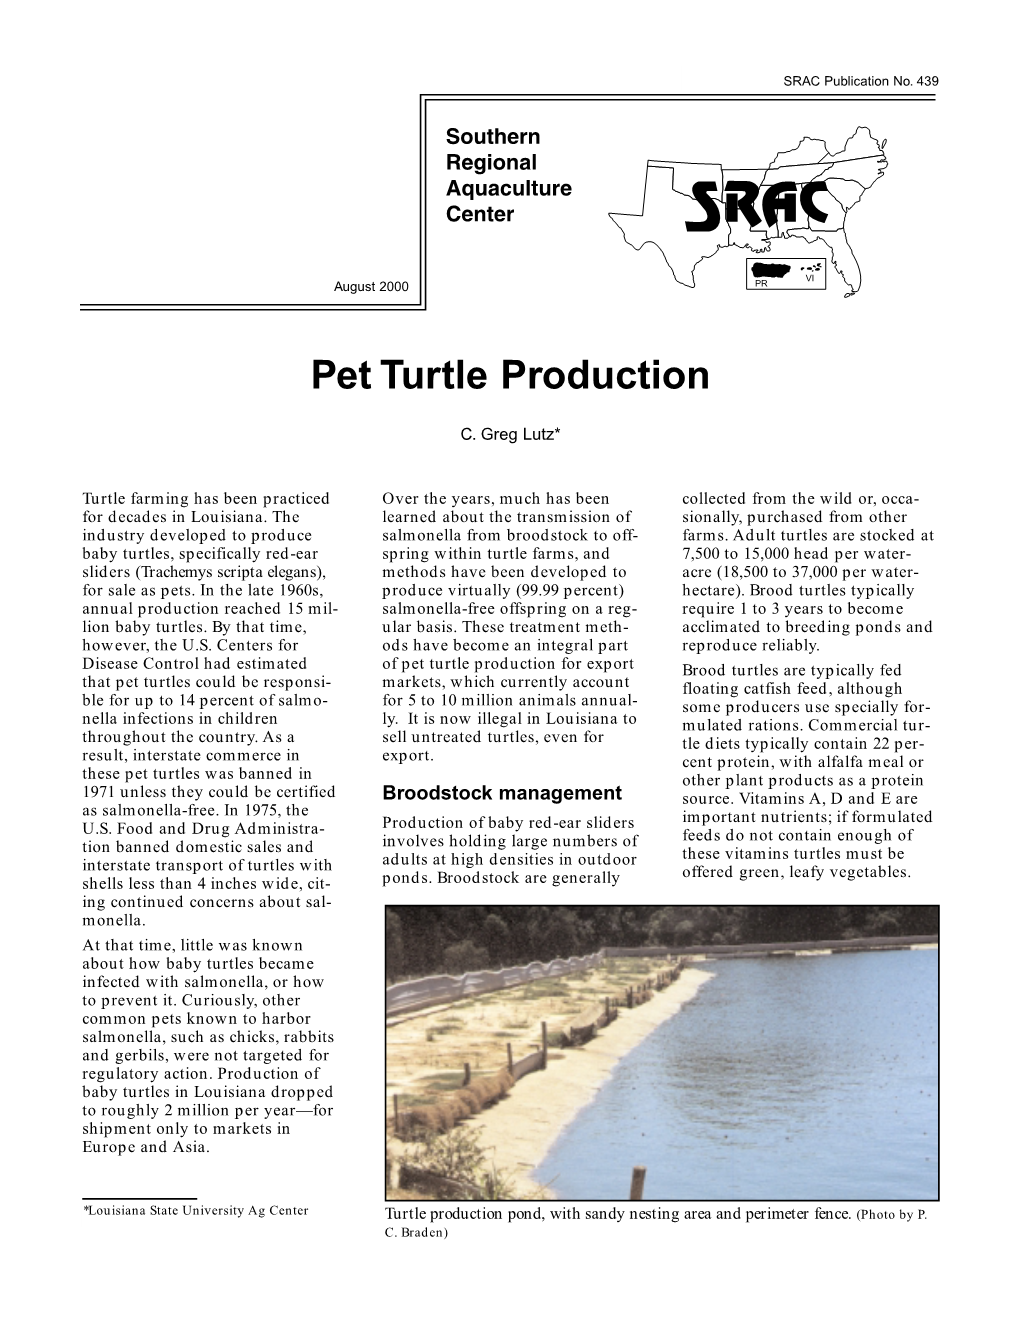 Pet Turtle Production